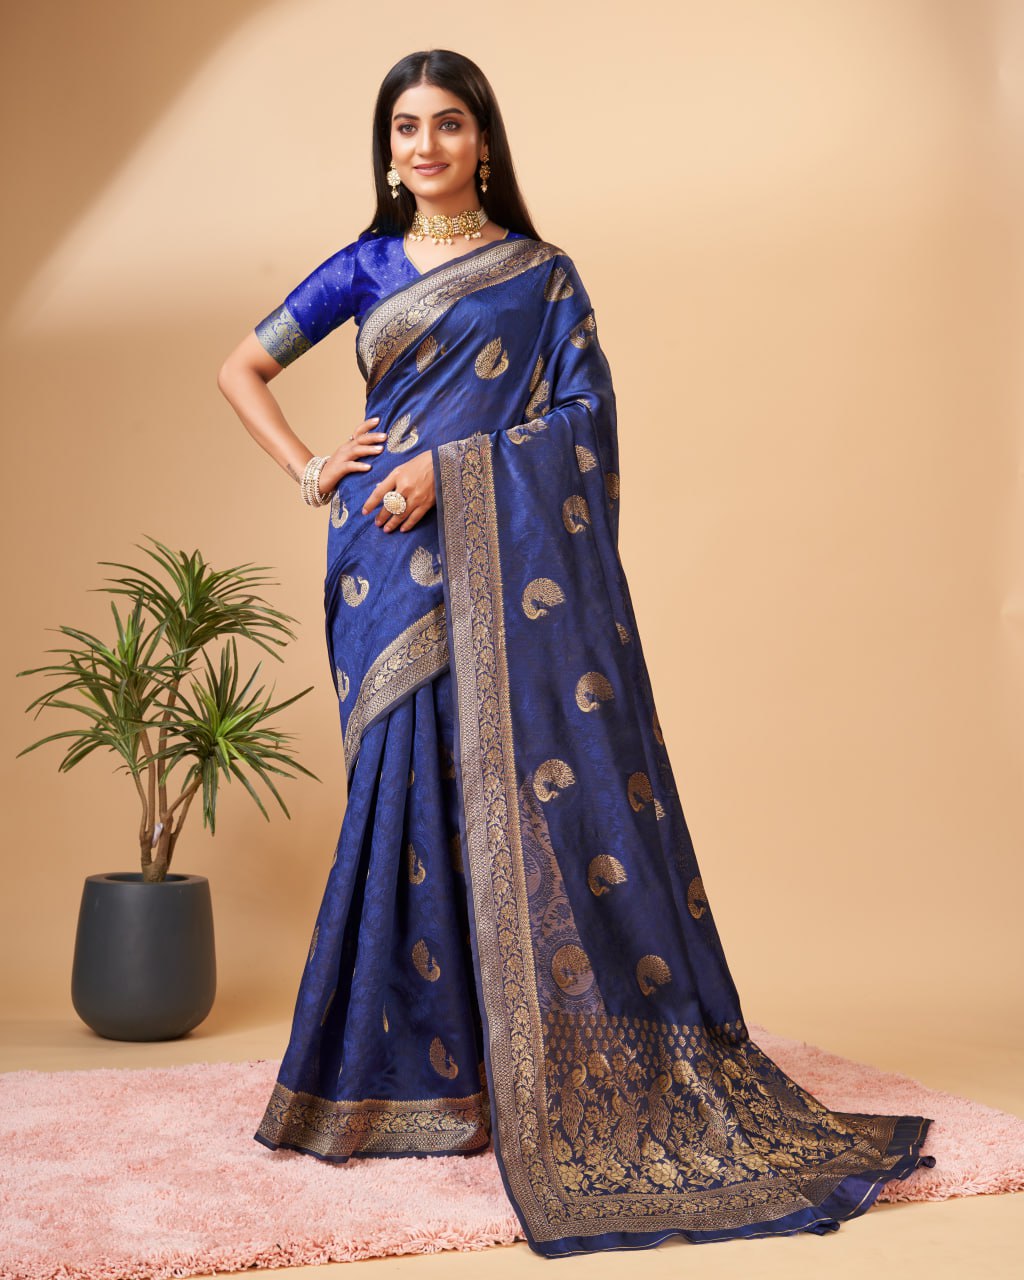 Banarasi Jacquard Elegance: Rich Pallu, Self Weaving, and Matching Blouse Border